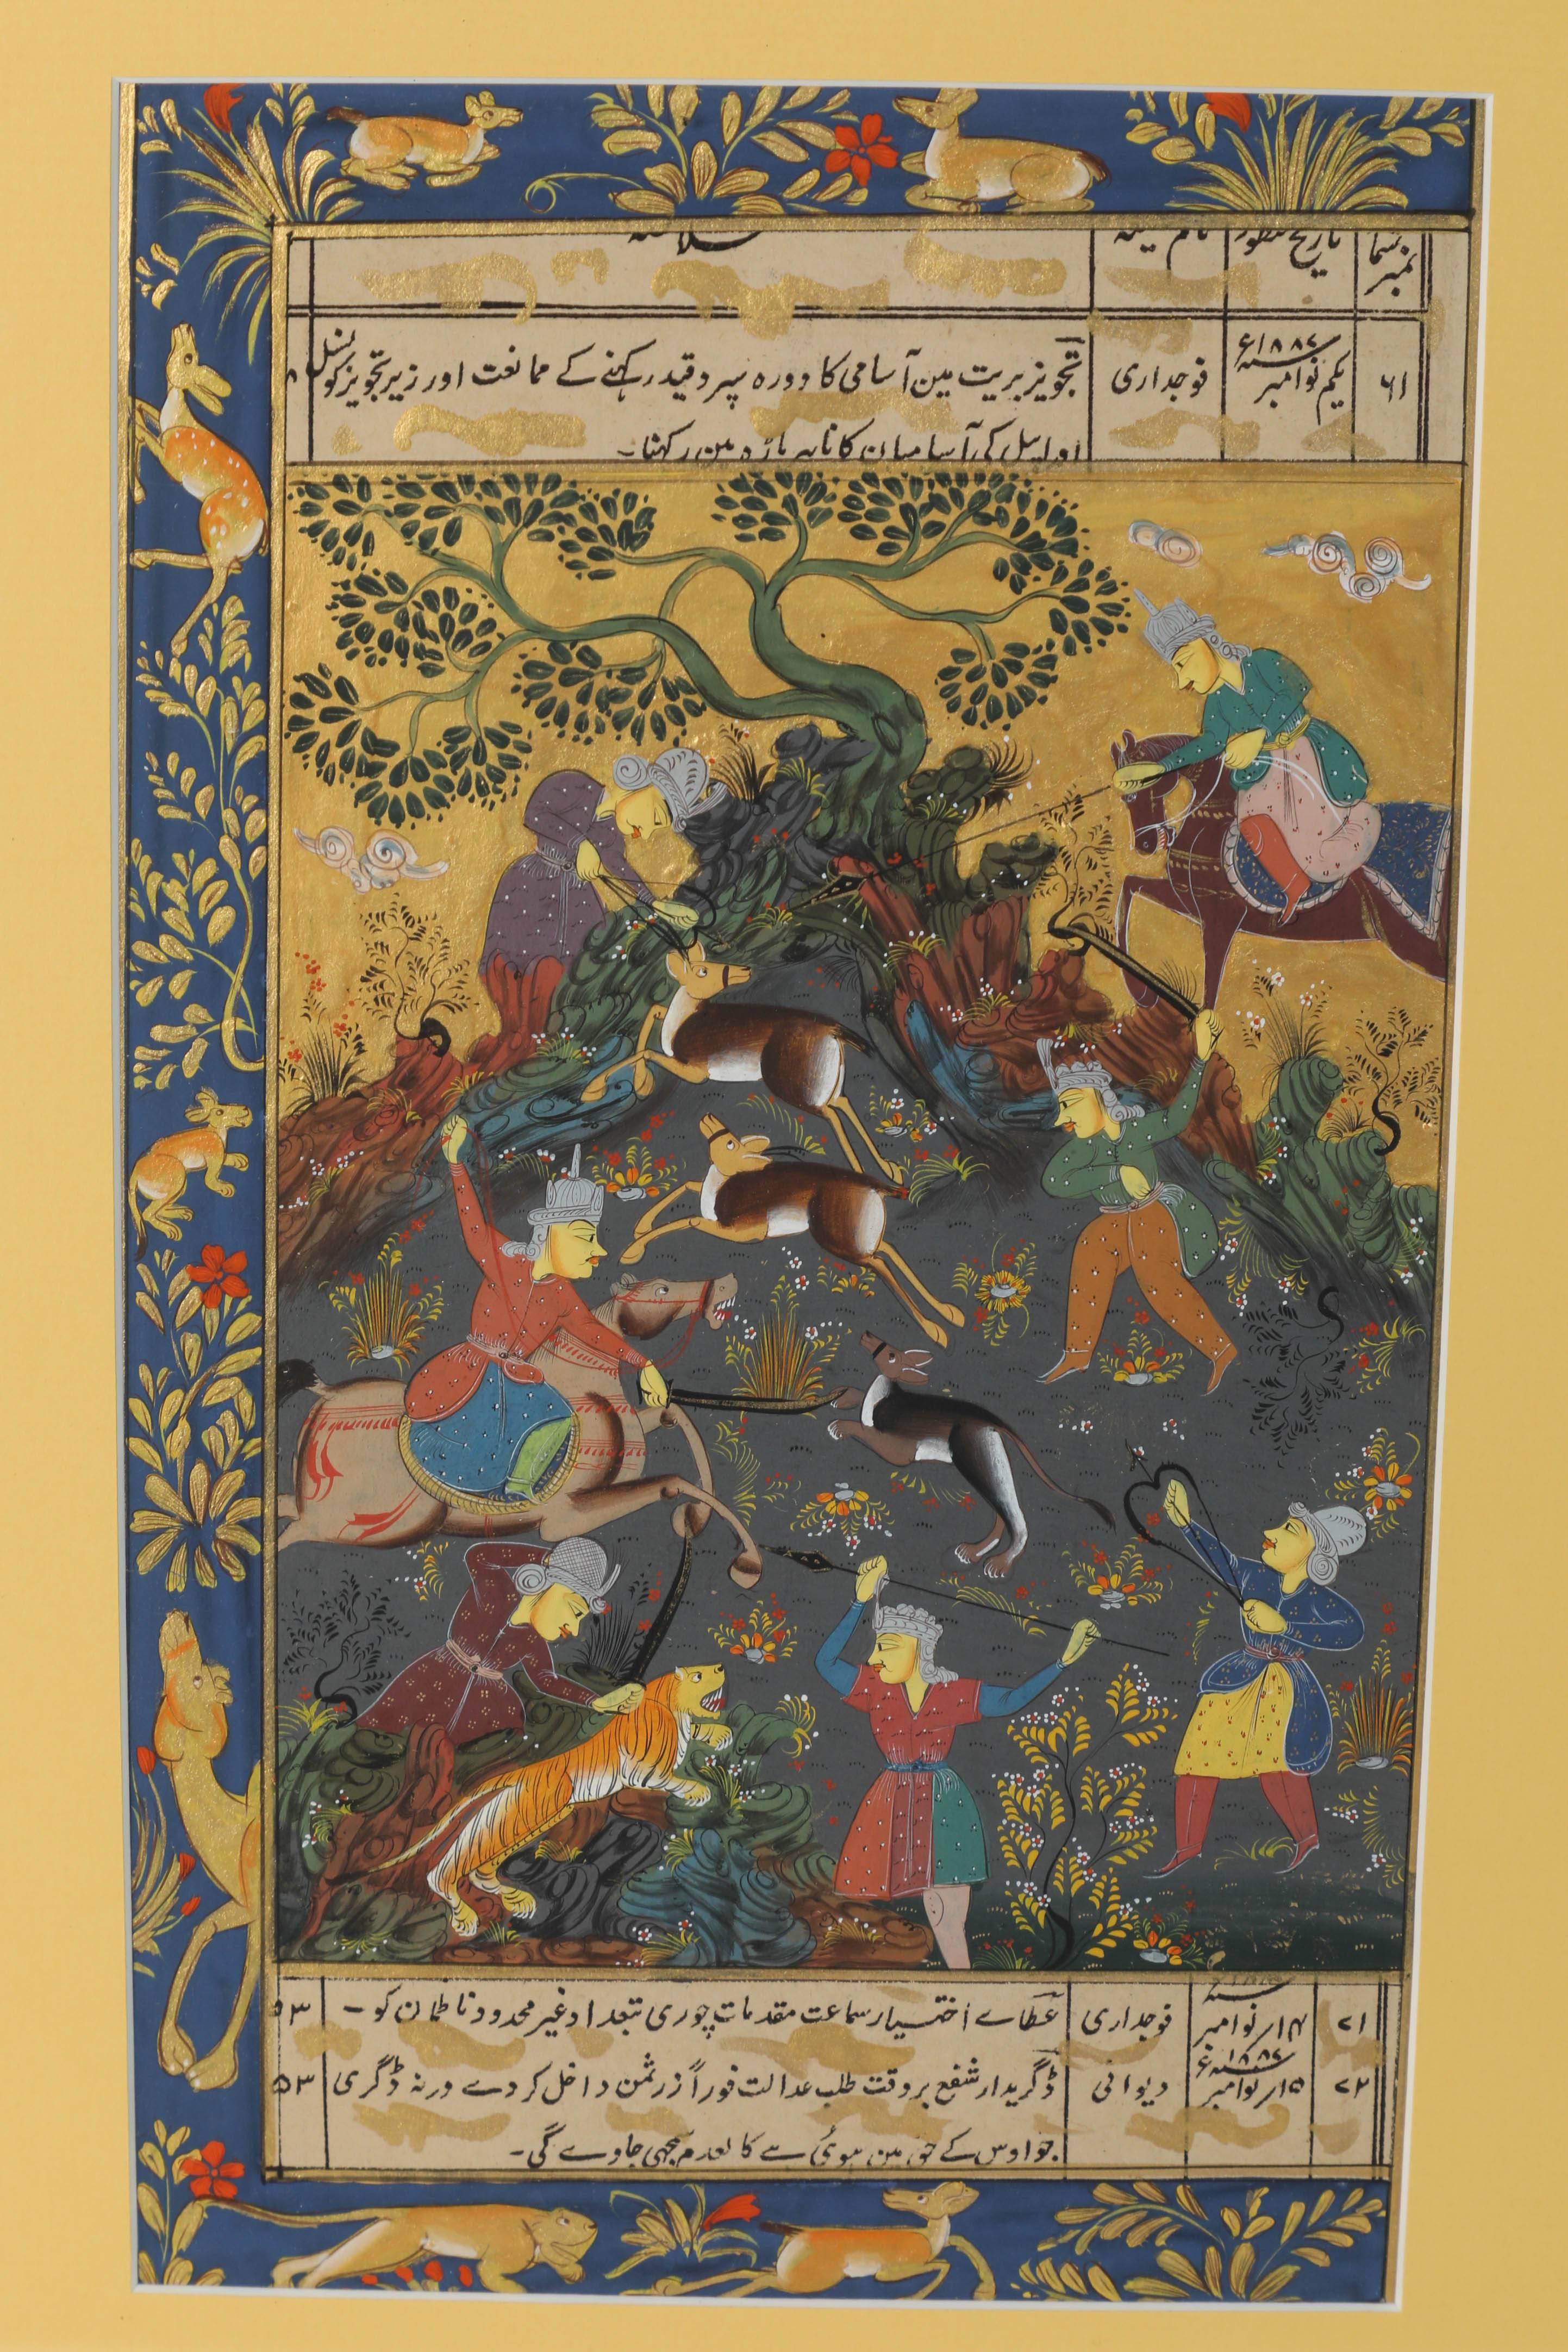 Miniature indienne moghole à l'aquarelle dans un cadre en marqueterie blanche
IndO-Persian peint à la main aquarelle miniature en très beau travail d'art d'une scène de chasse avec l'écriture arabe, persan.
Bien encadré dans un cadre incrusté et